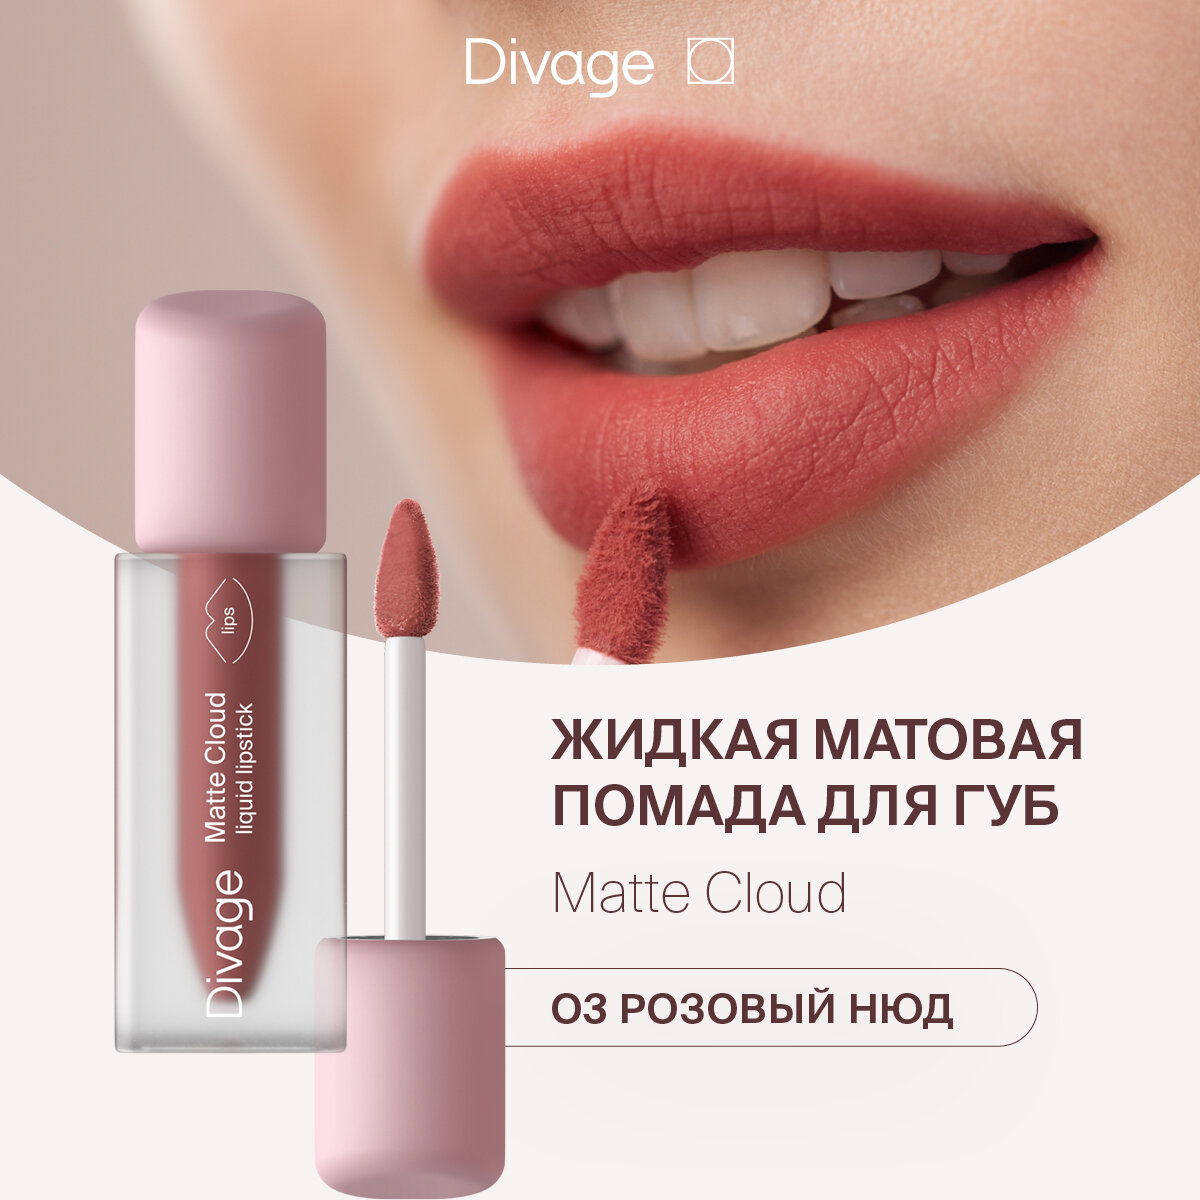 Divage Помада для губ жидкая матовая Matte Cloud Liquid Lipstick тон 03